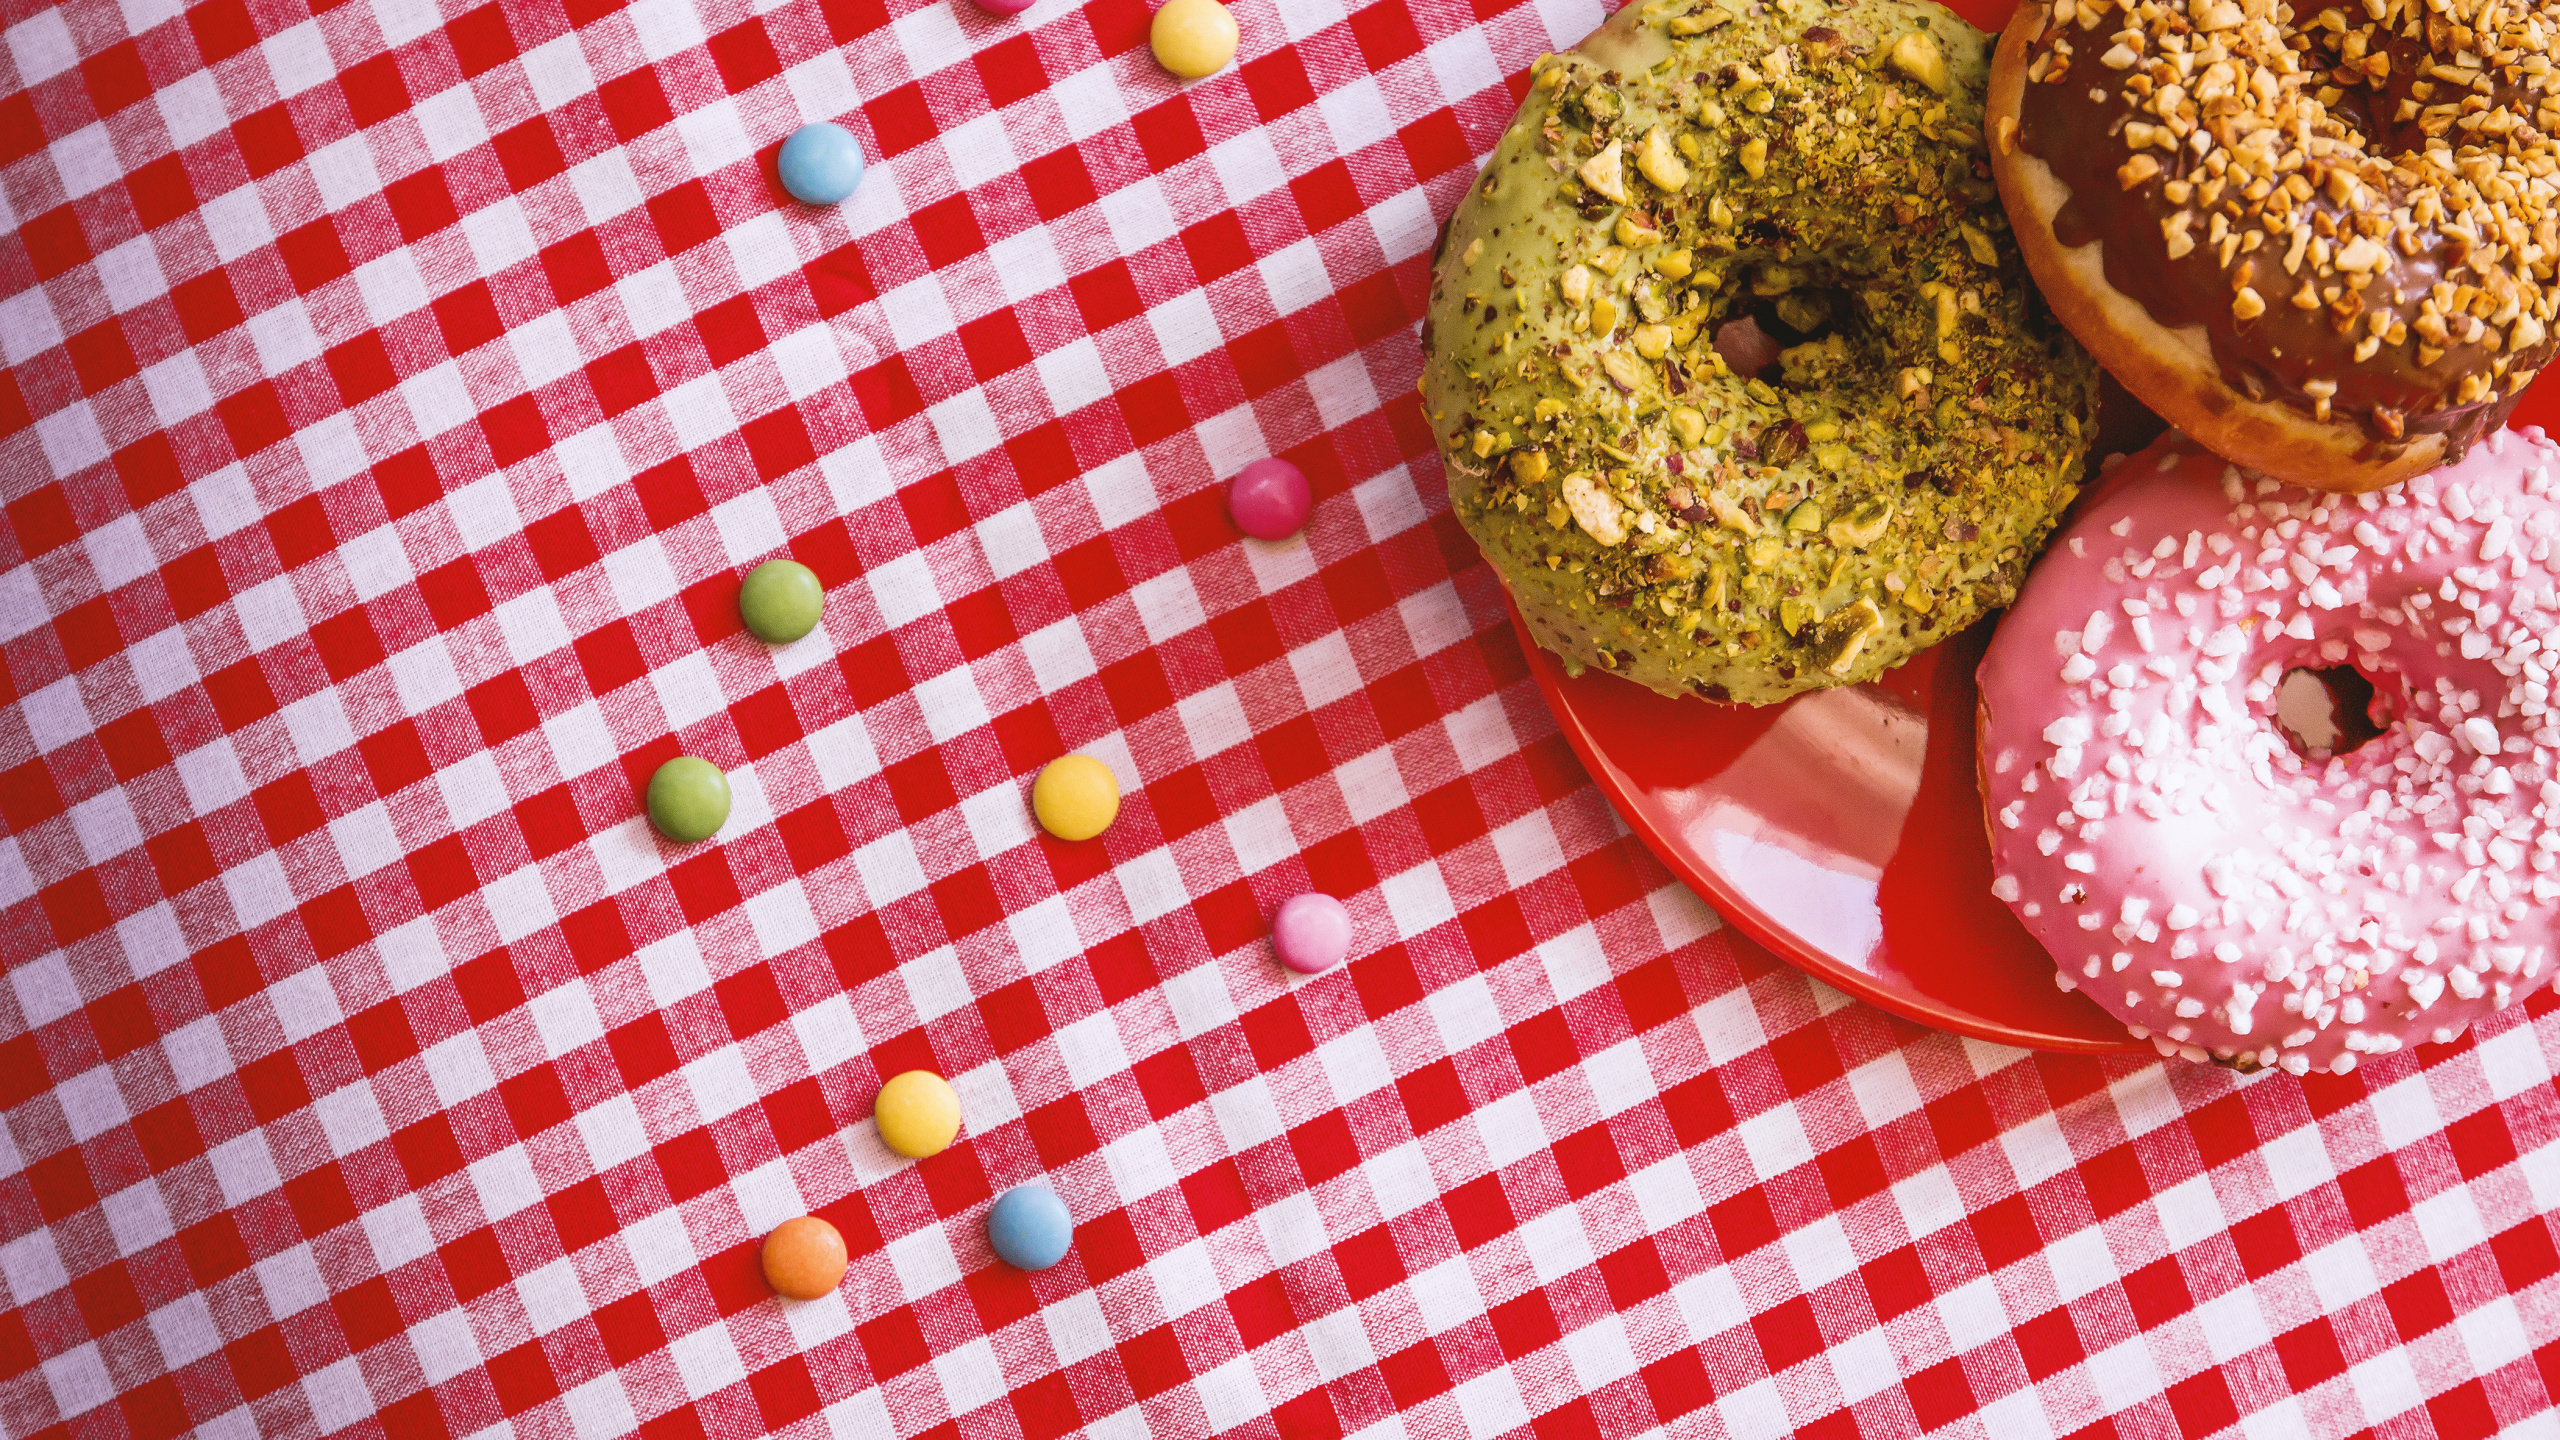 Brauner Donut Auf Rot-weiß Karierter Tischdecke. Wallpaper in 2560x1440 Resolution